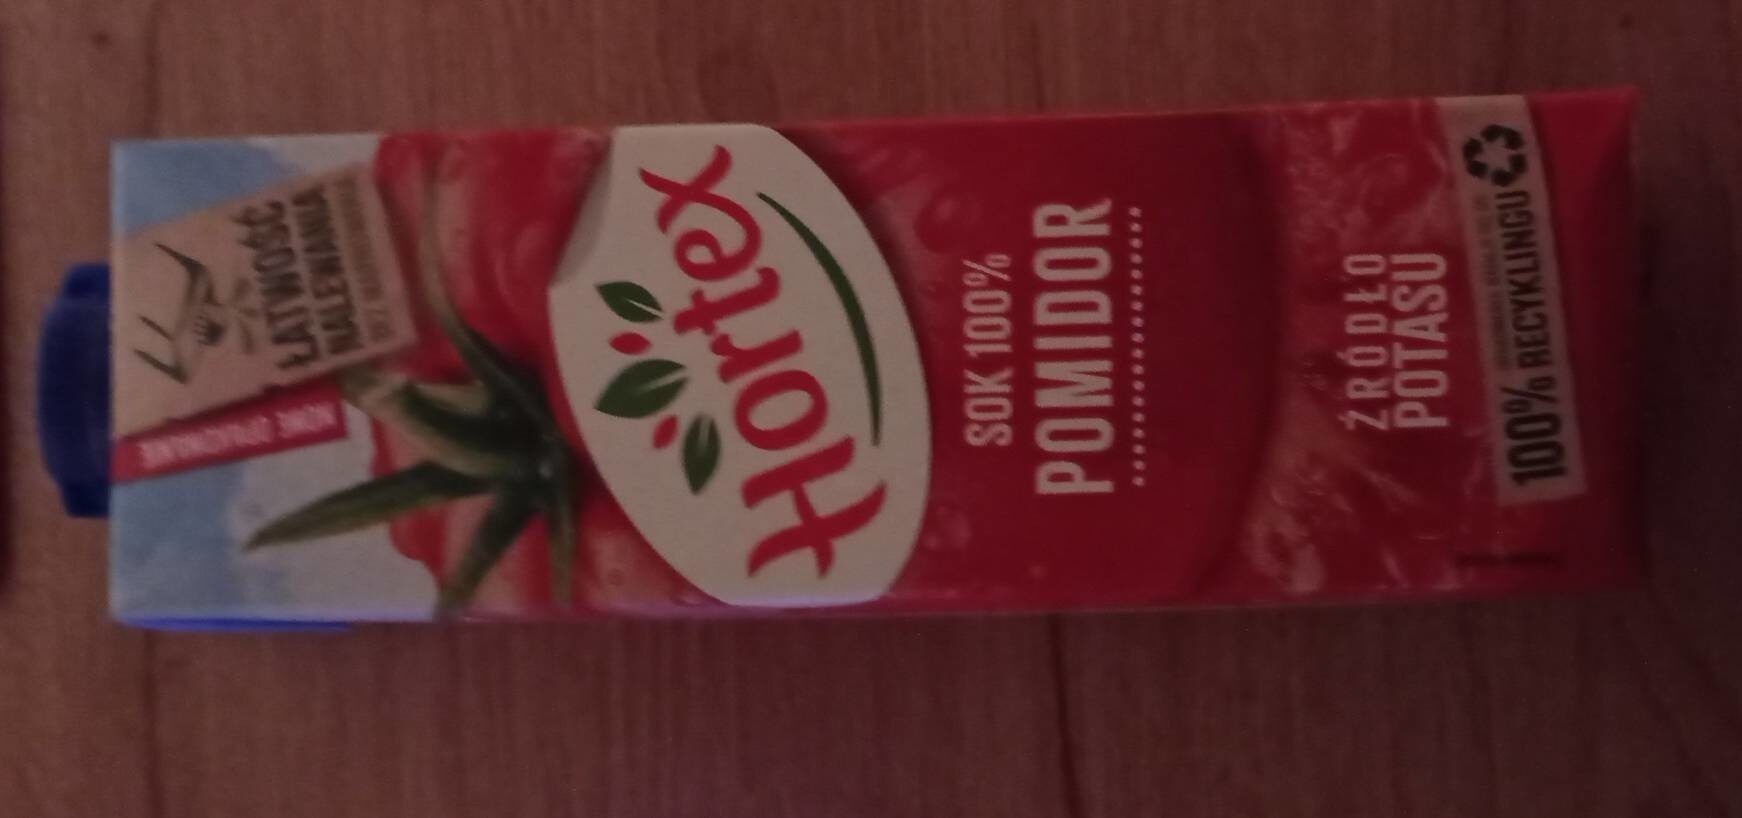 Hortex sok pomidorowy - Product - en